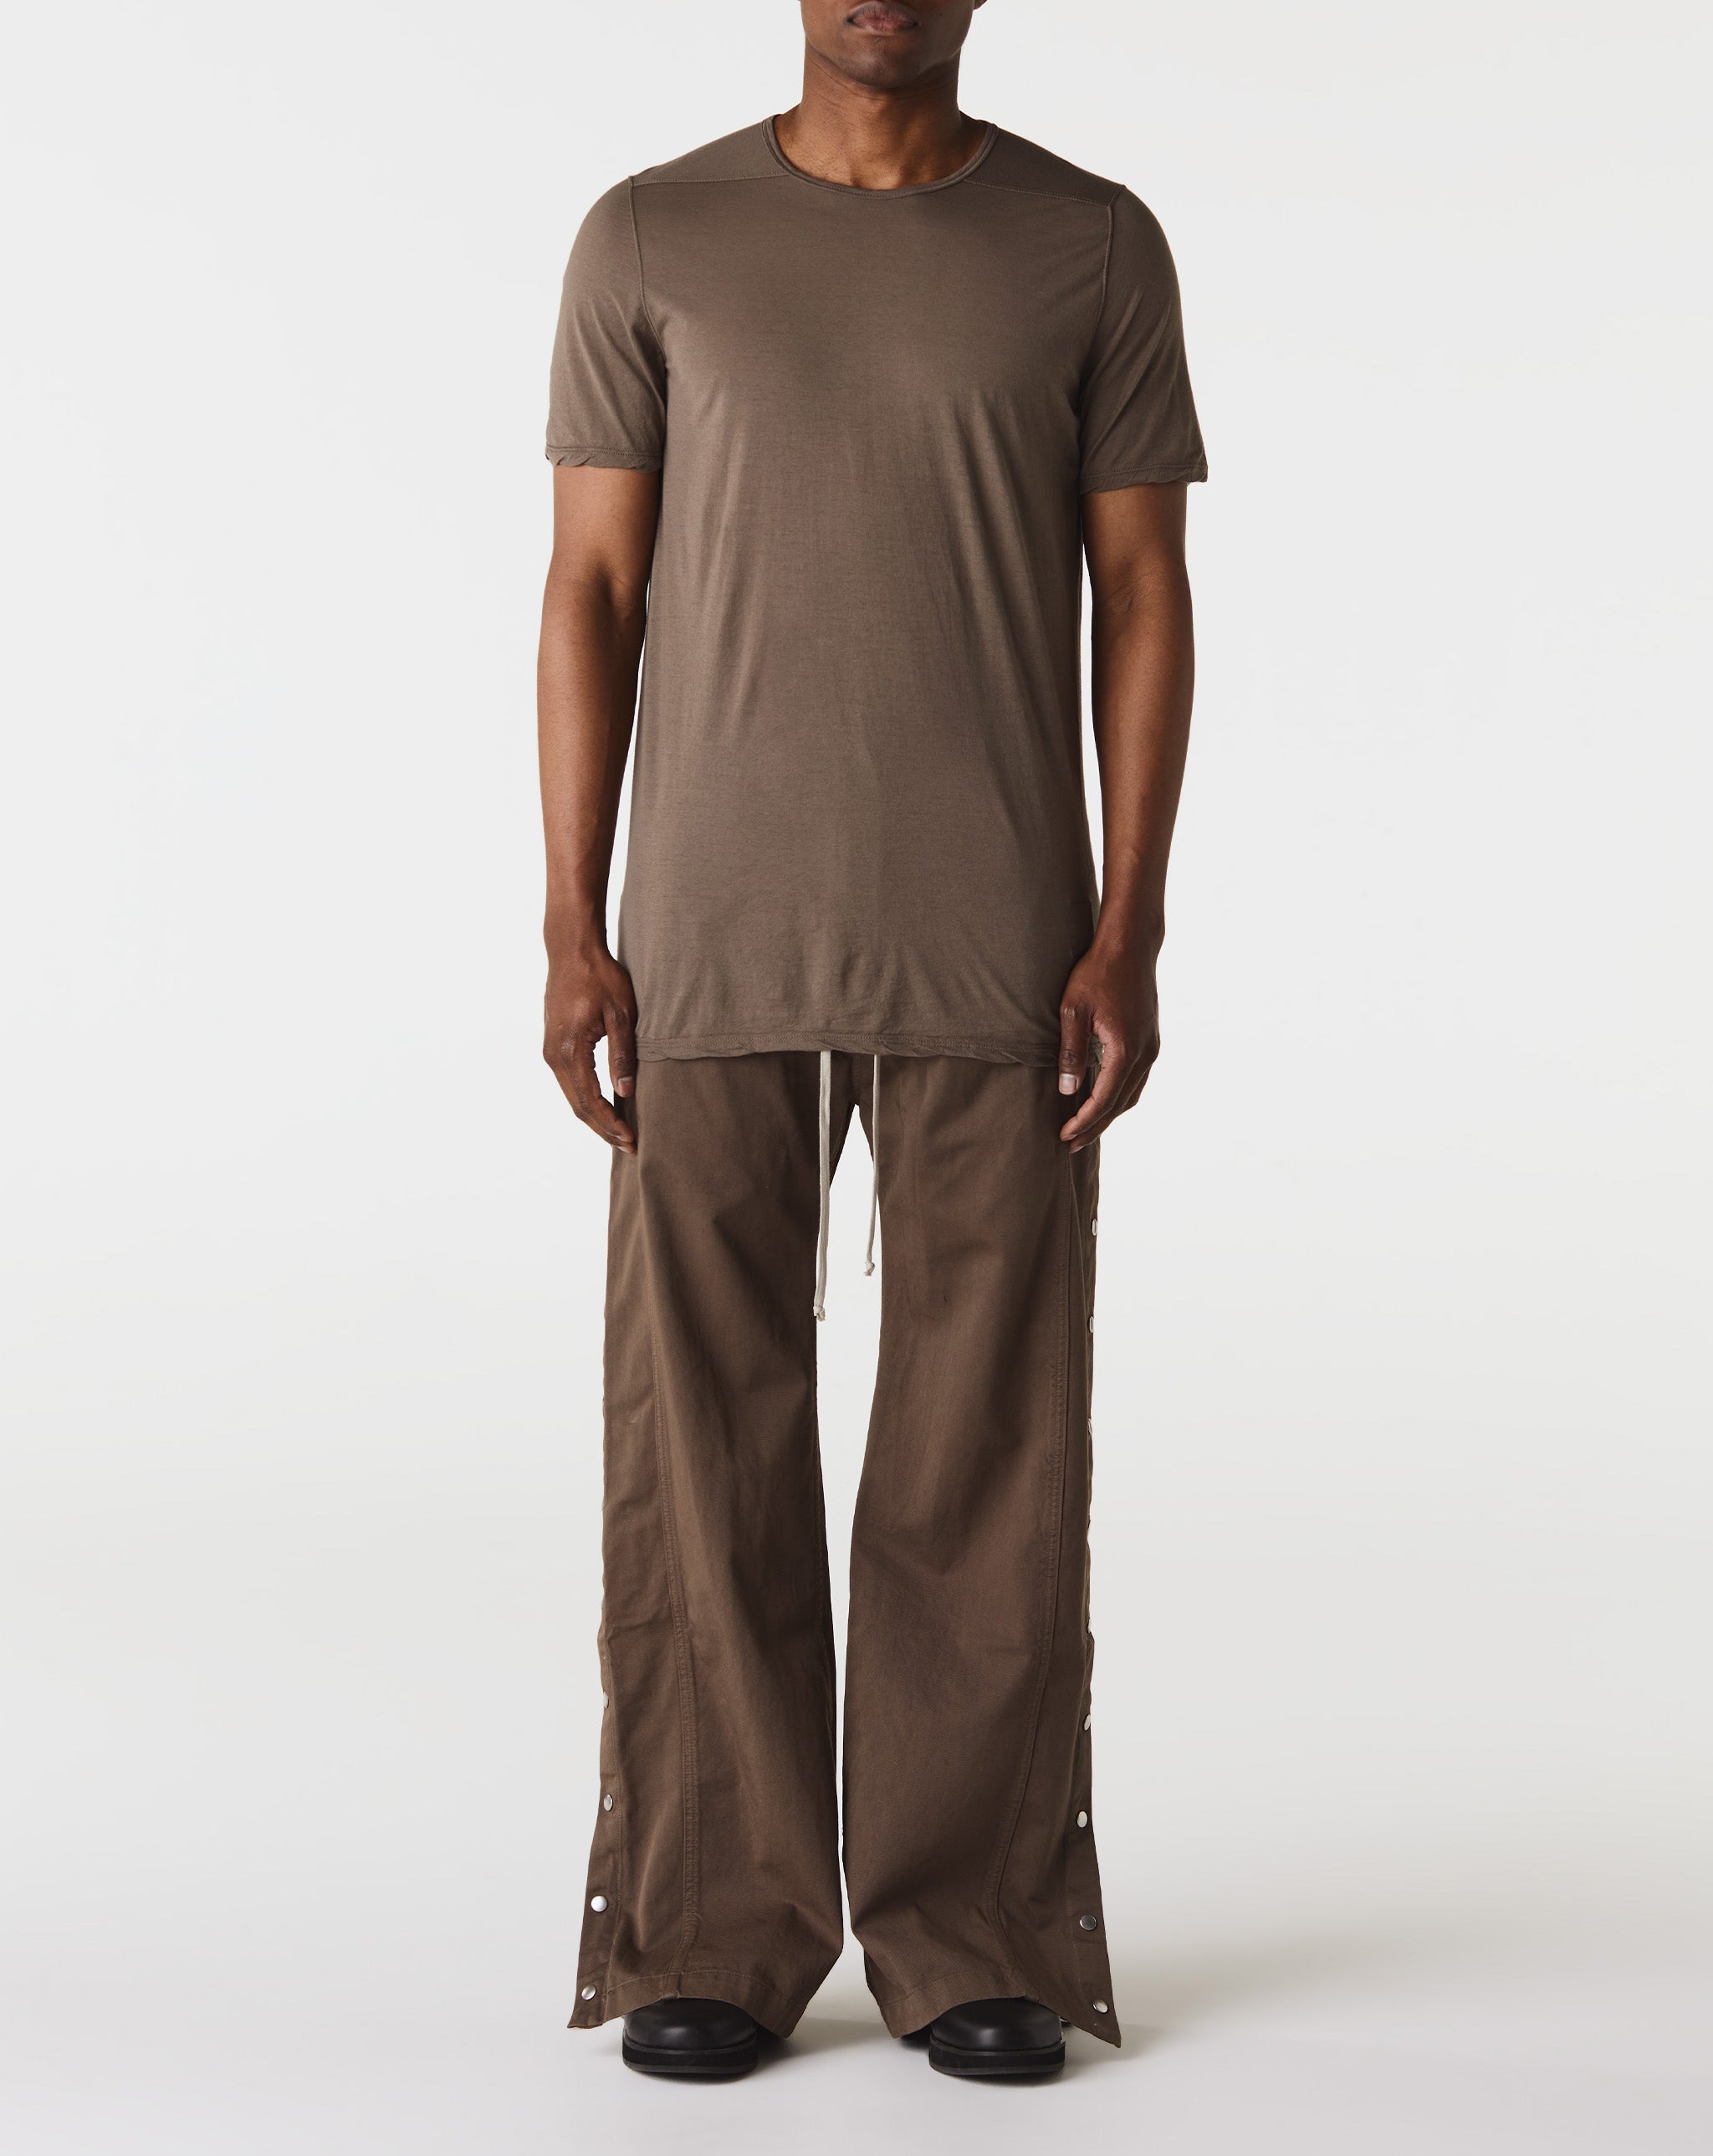 Bags & Wallets Level T-Shirt  - Cheap Urlfreeze Jordan outlet